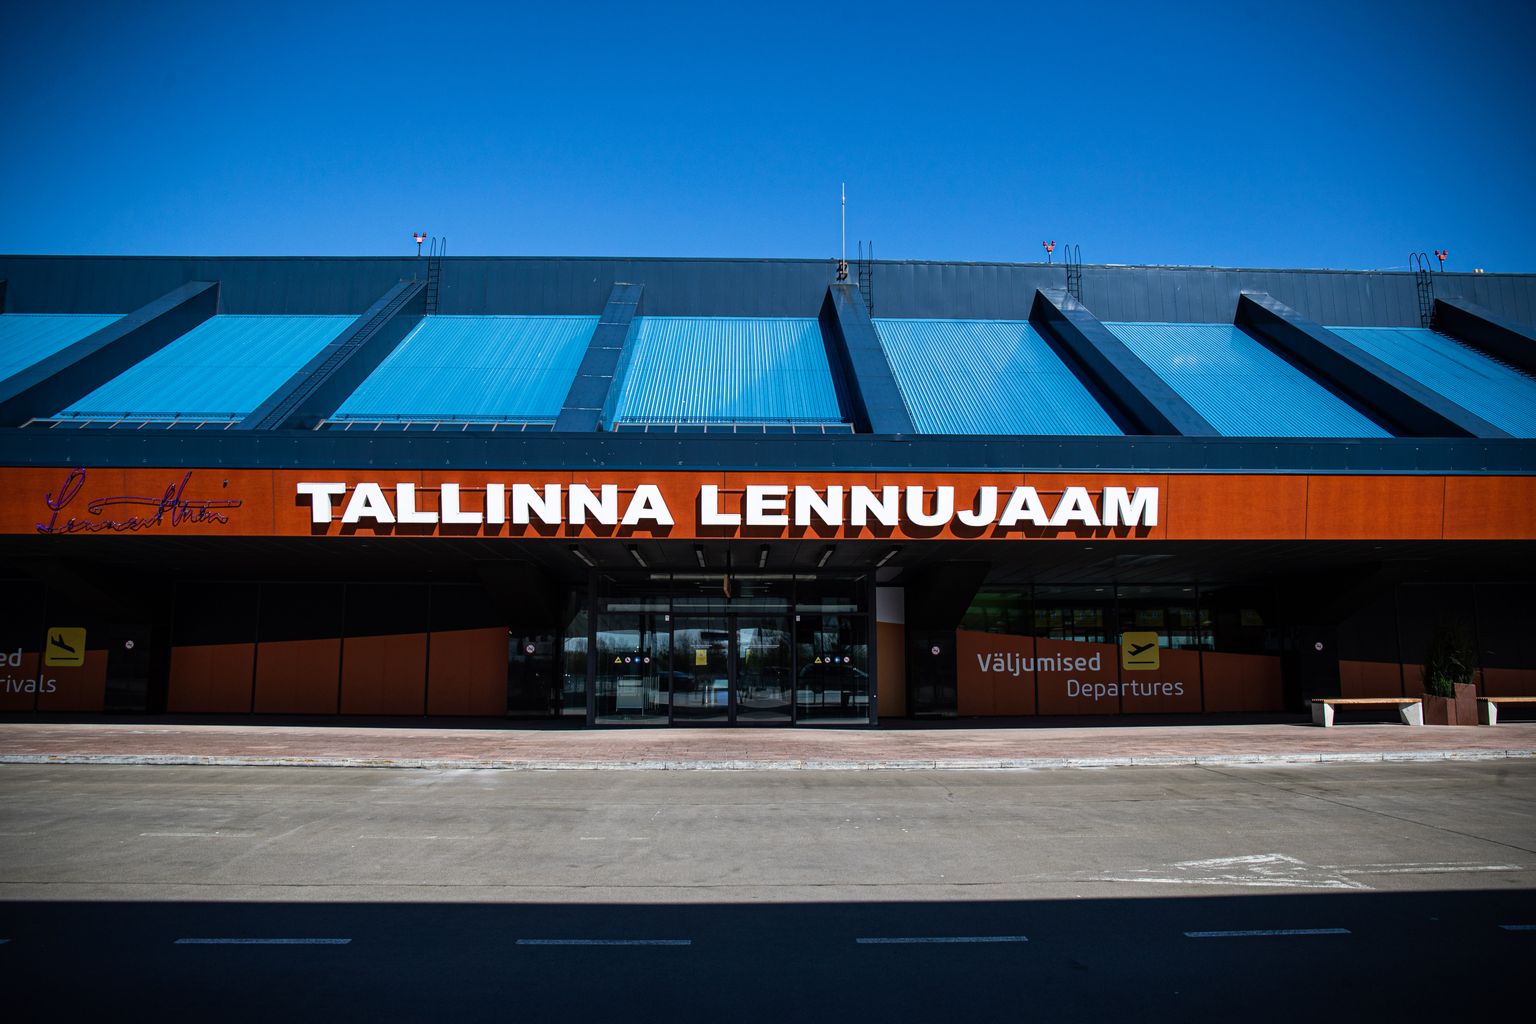 Tallinna lennujaama läbis juulis üle 75 000 reisija. Eelmise aasta samal kuul teenindati üle 319 000 reisija.